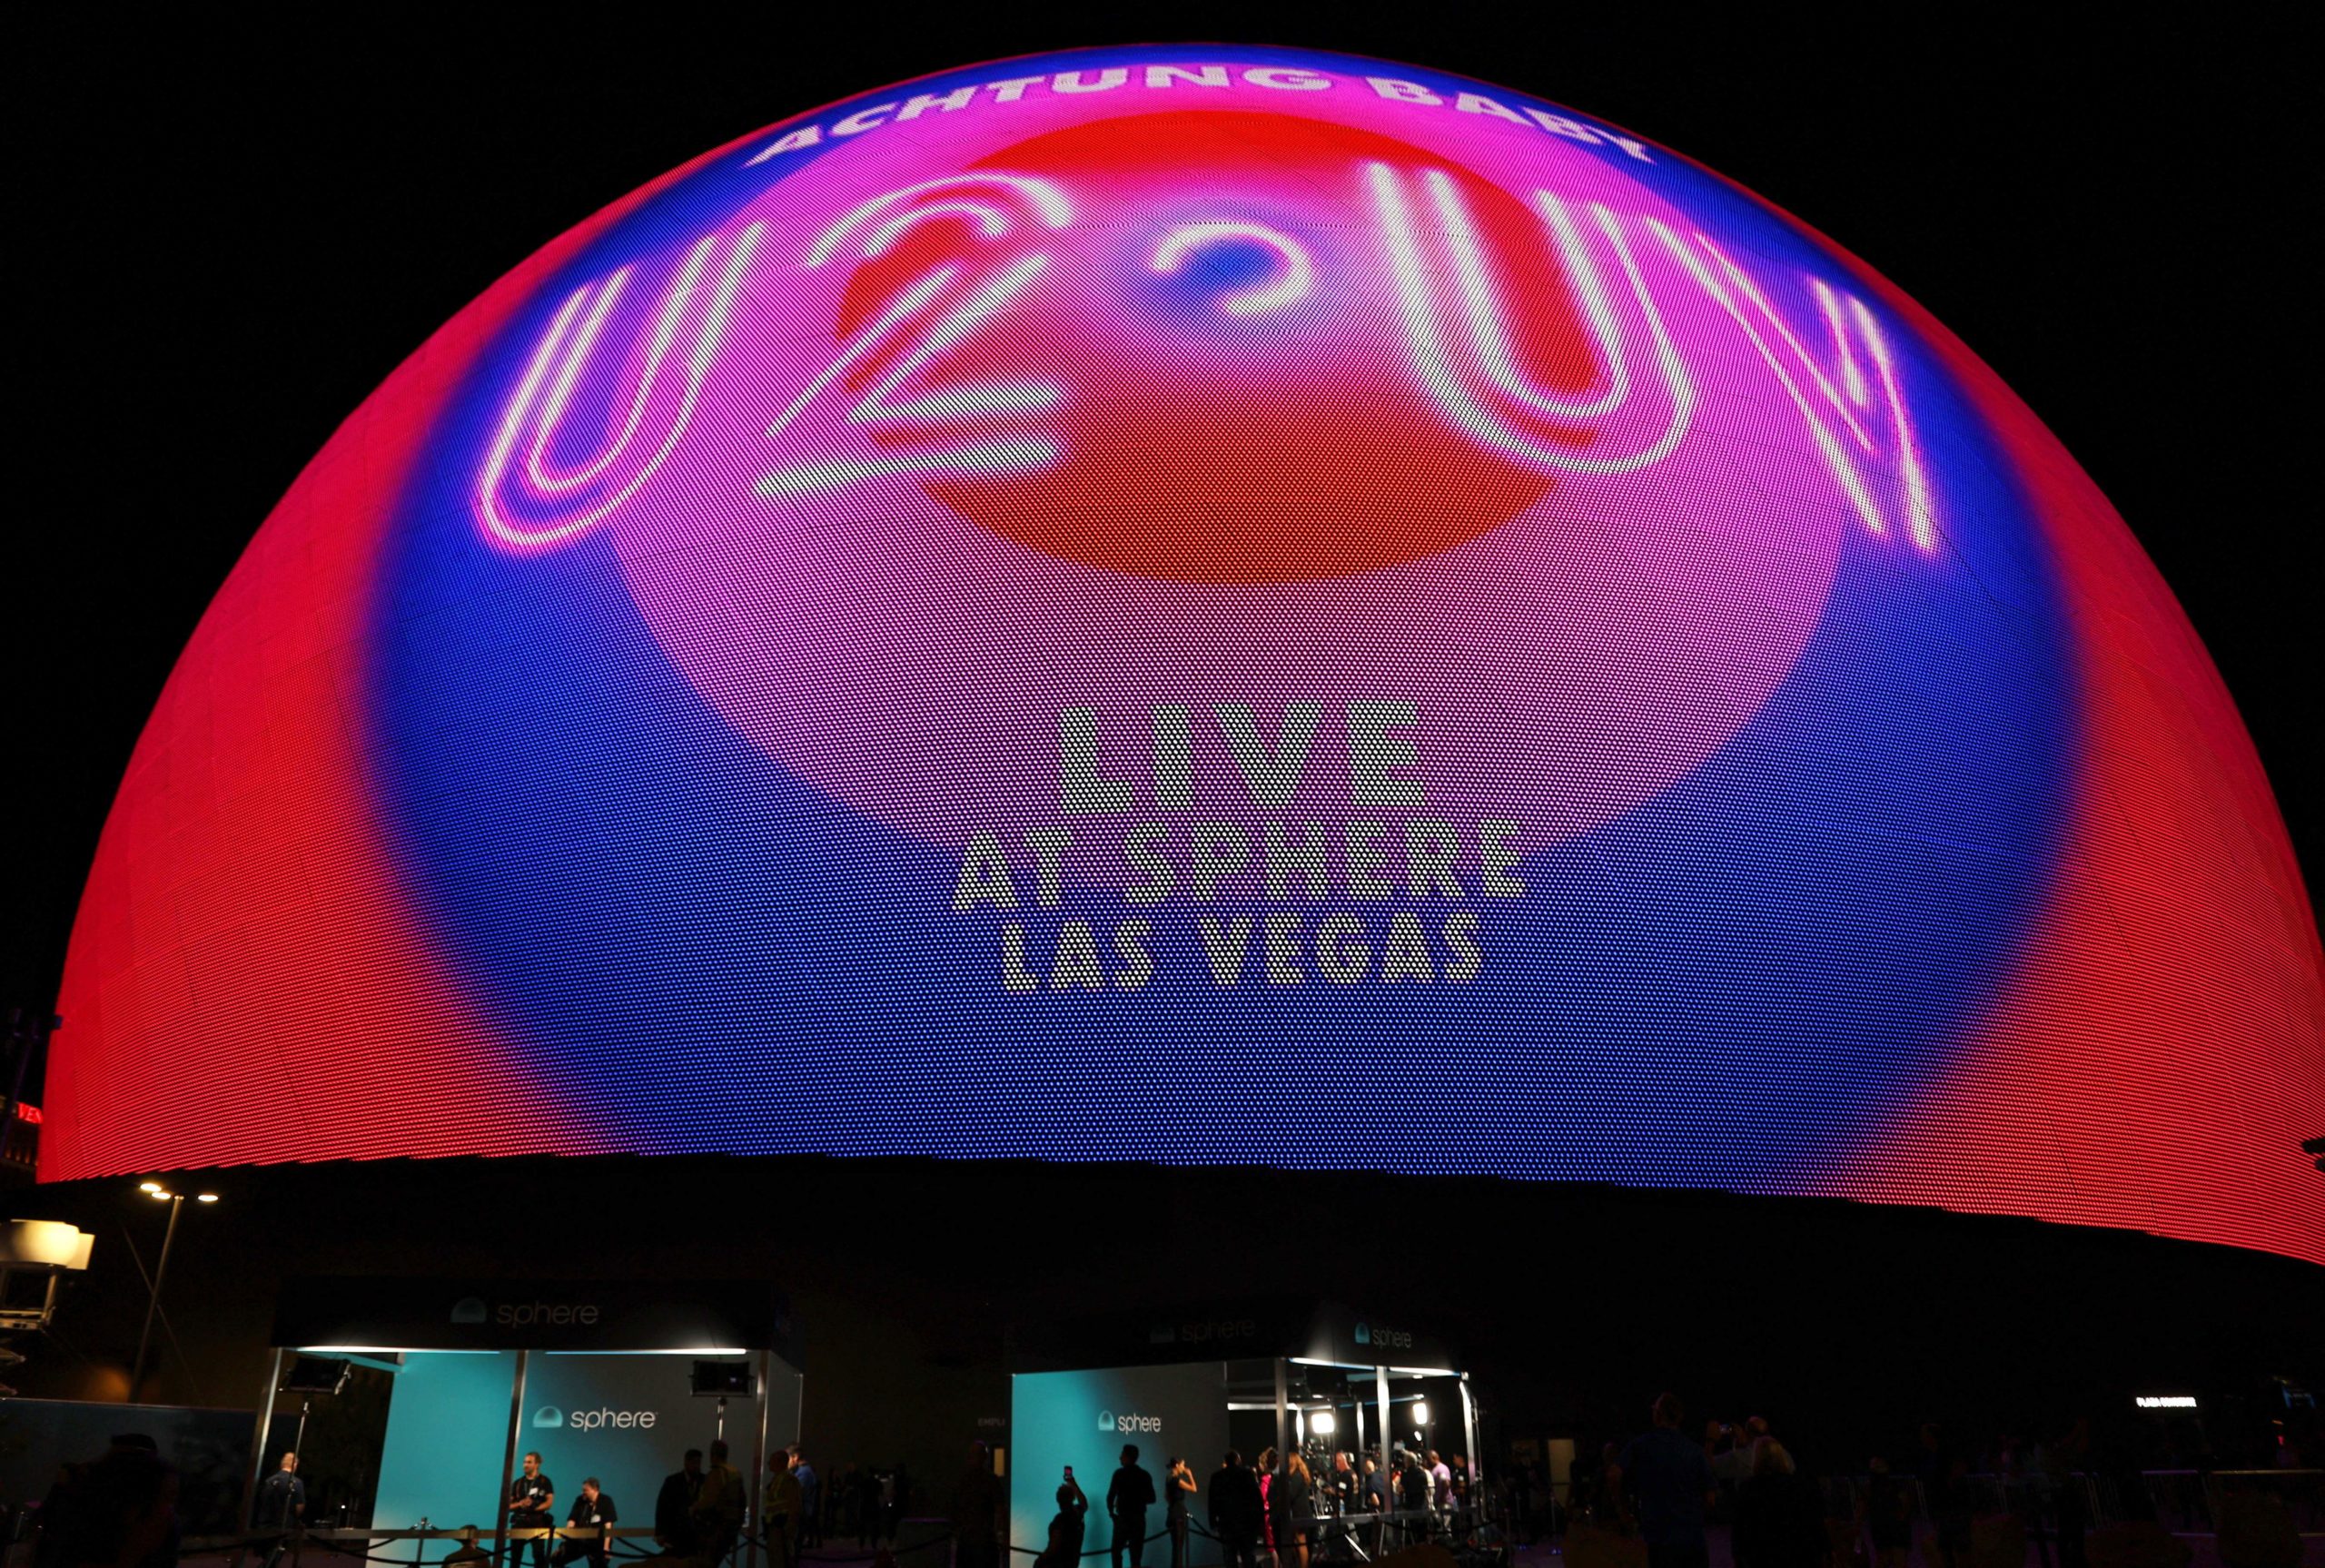 U2 Sphere